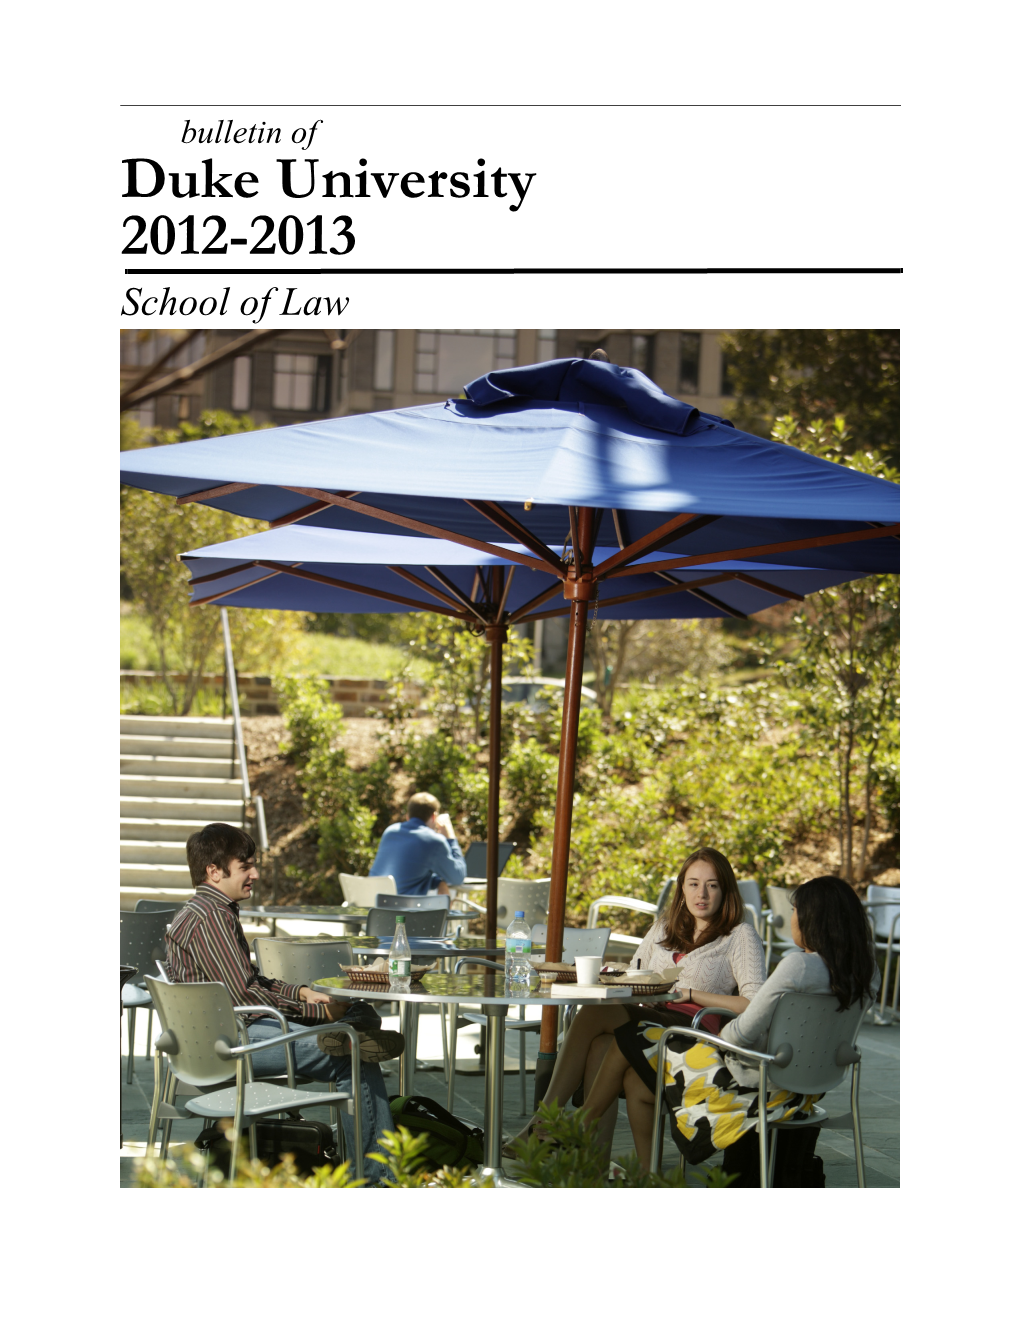 Duke University 2012-2013 School of Law the Mission of Duke University